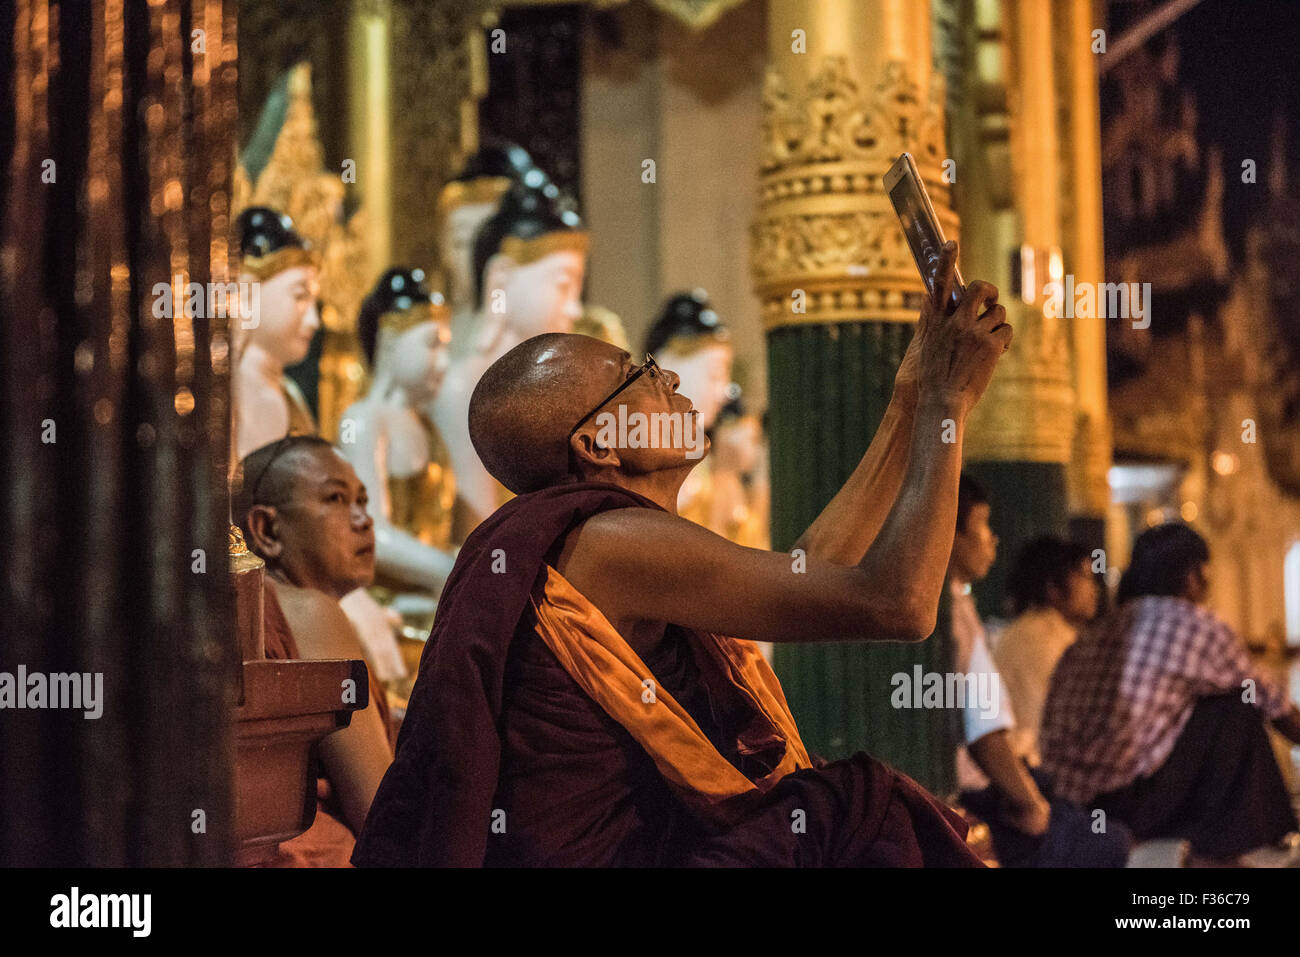 Shwedagon pagoda Yangon, Myanmar Foto Stock